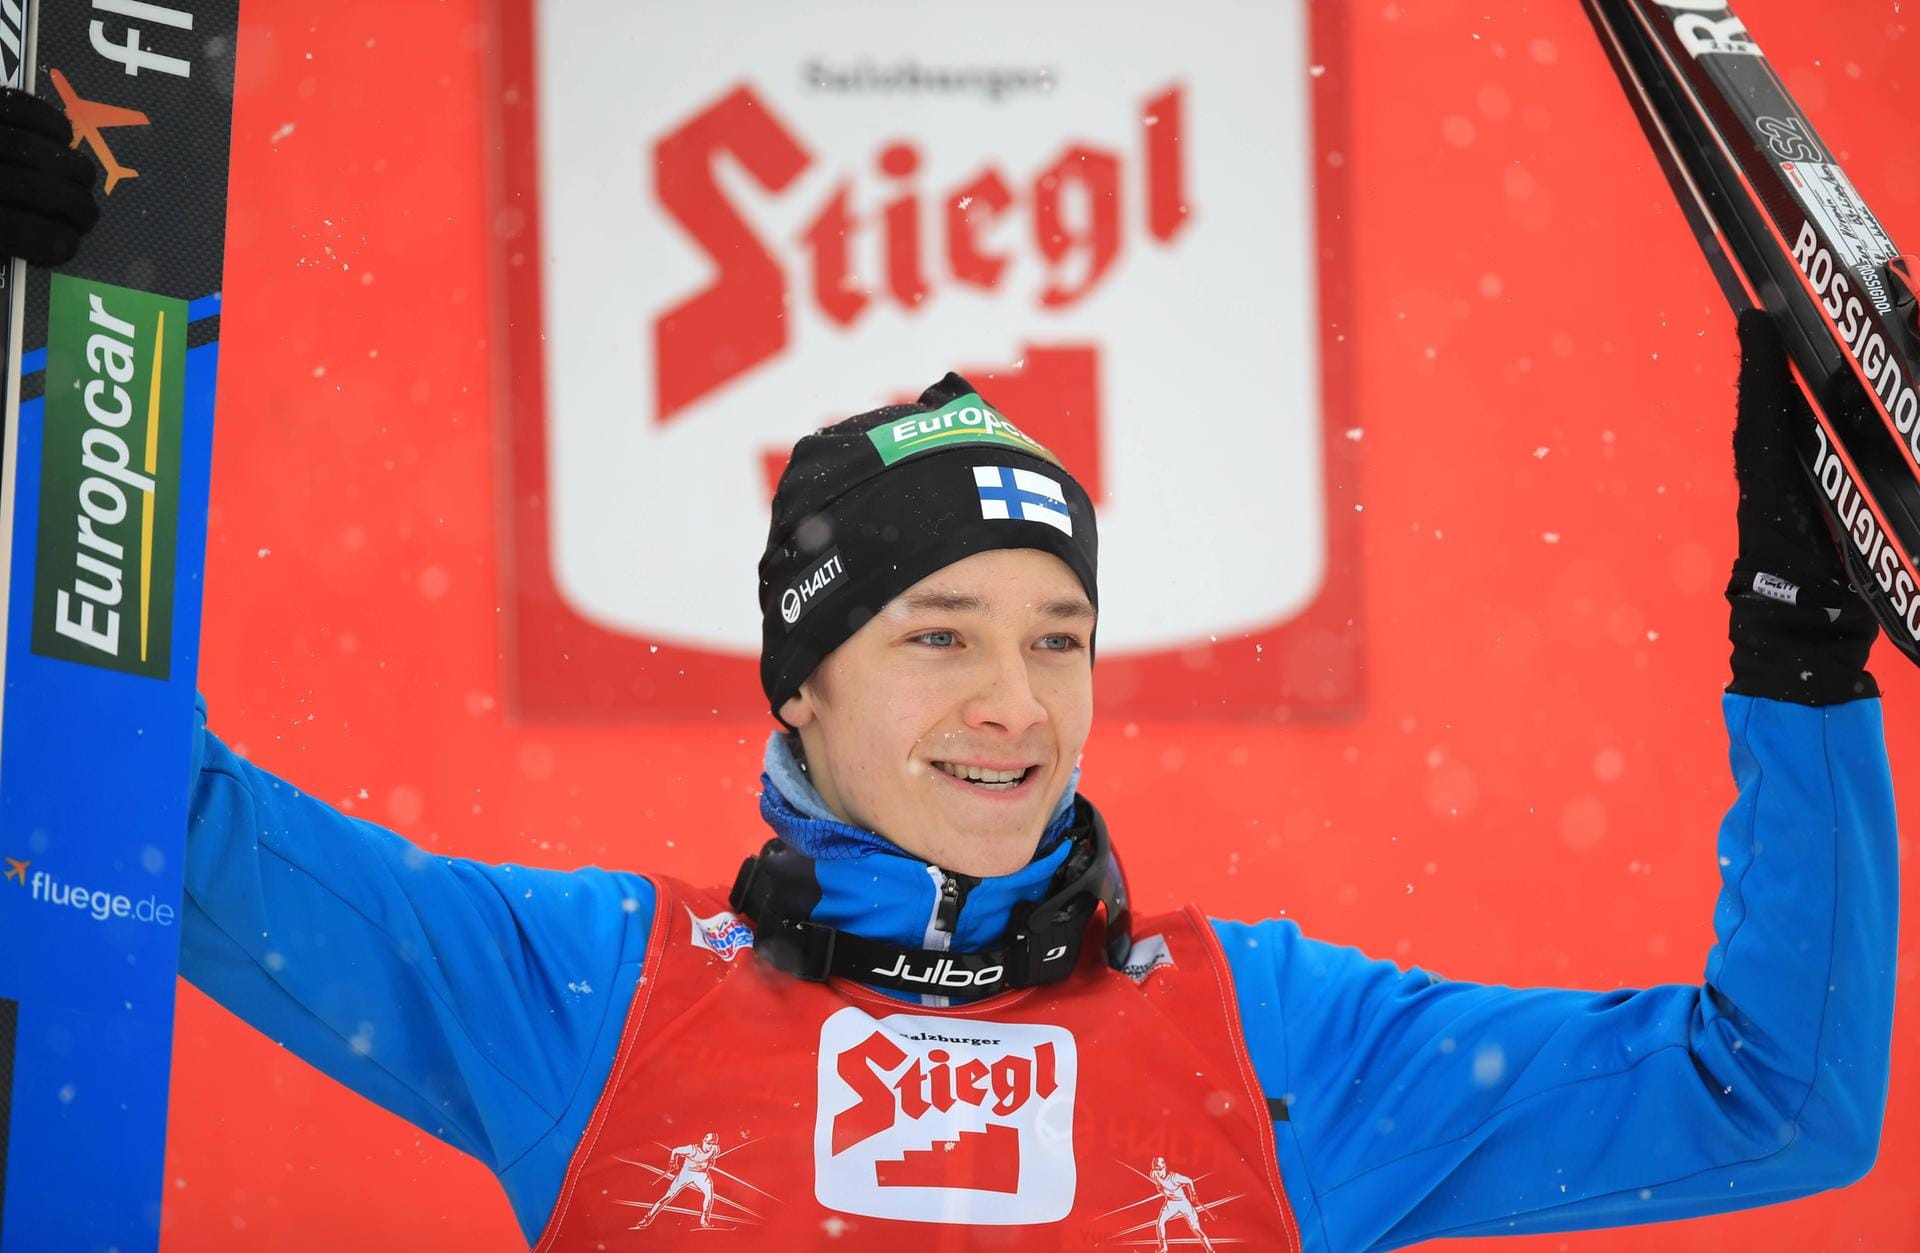 Der Finne Eero Hirvonen ist erst 22 Jahre alt und wurde trotz seines jungen Alters Sechster in der Gesamtwertung. Fünf Podestplätze heimste er insgesamt ein.